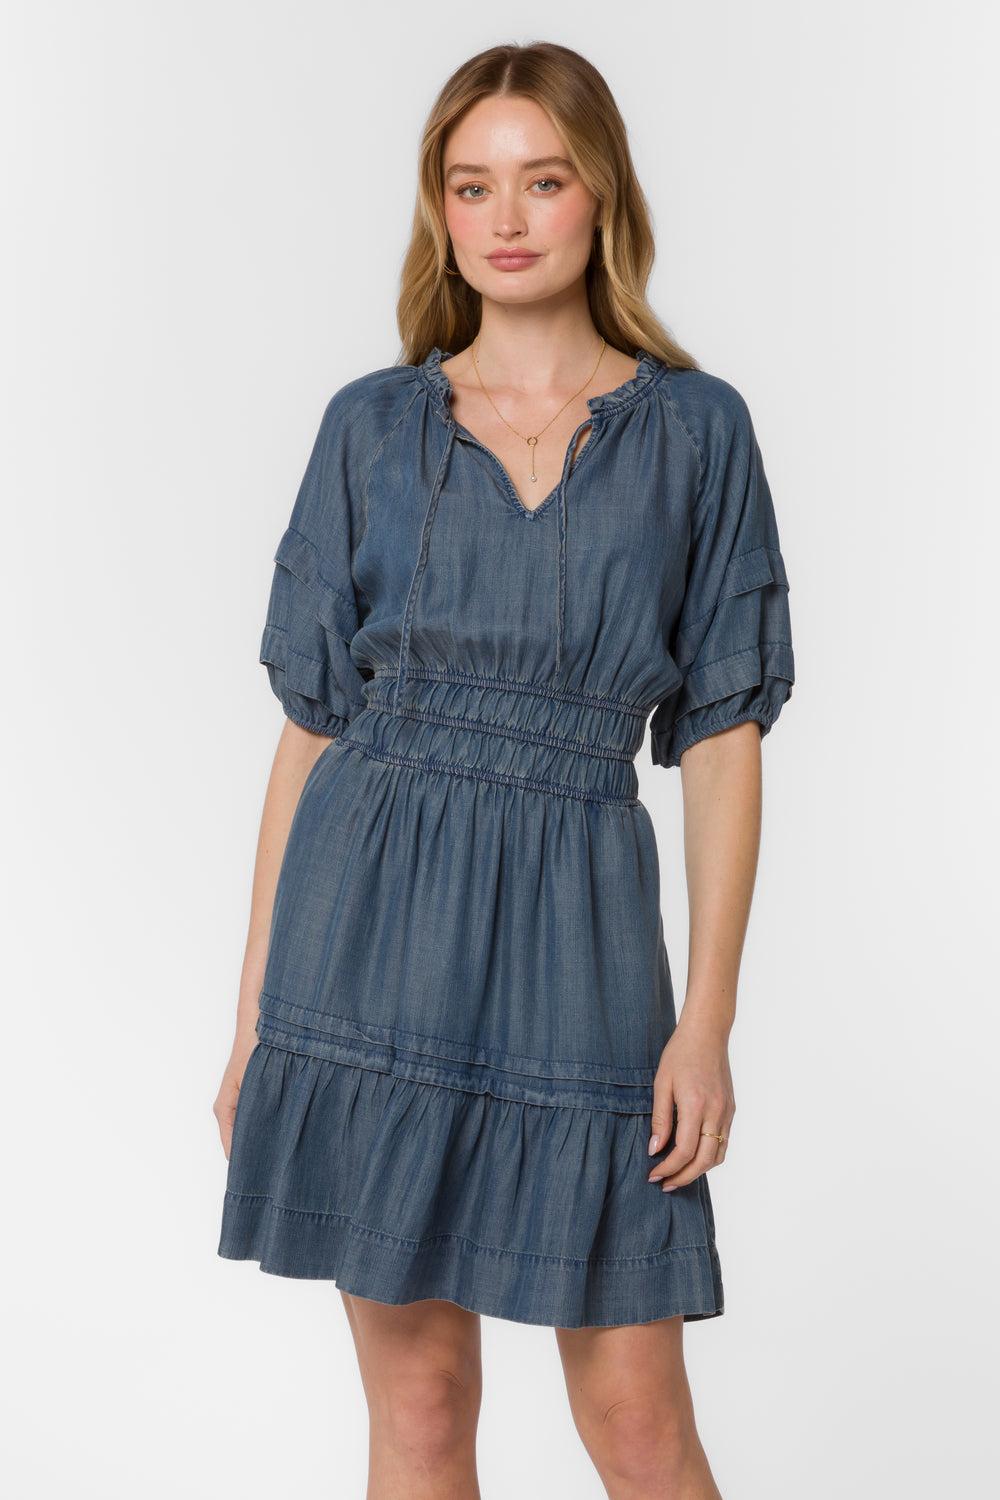 Donna Malibu Blue Dress - Dresses - Velvet Heart Clothing